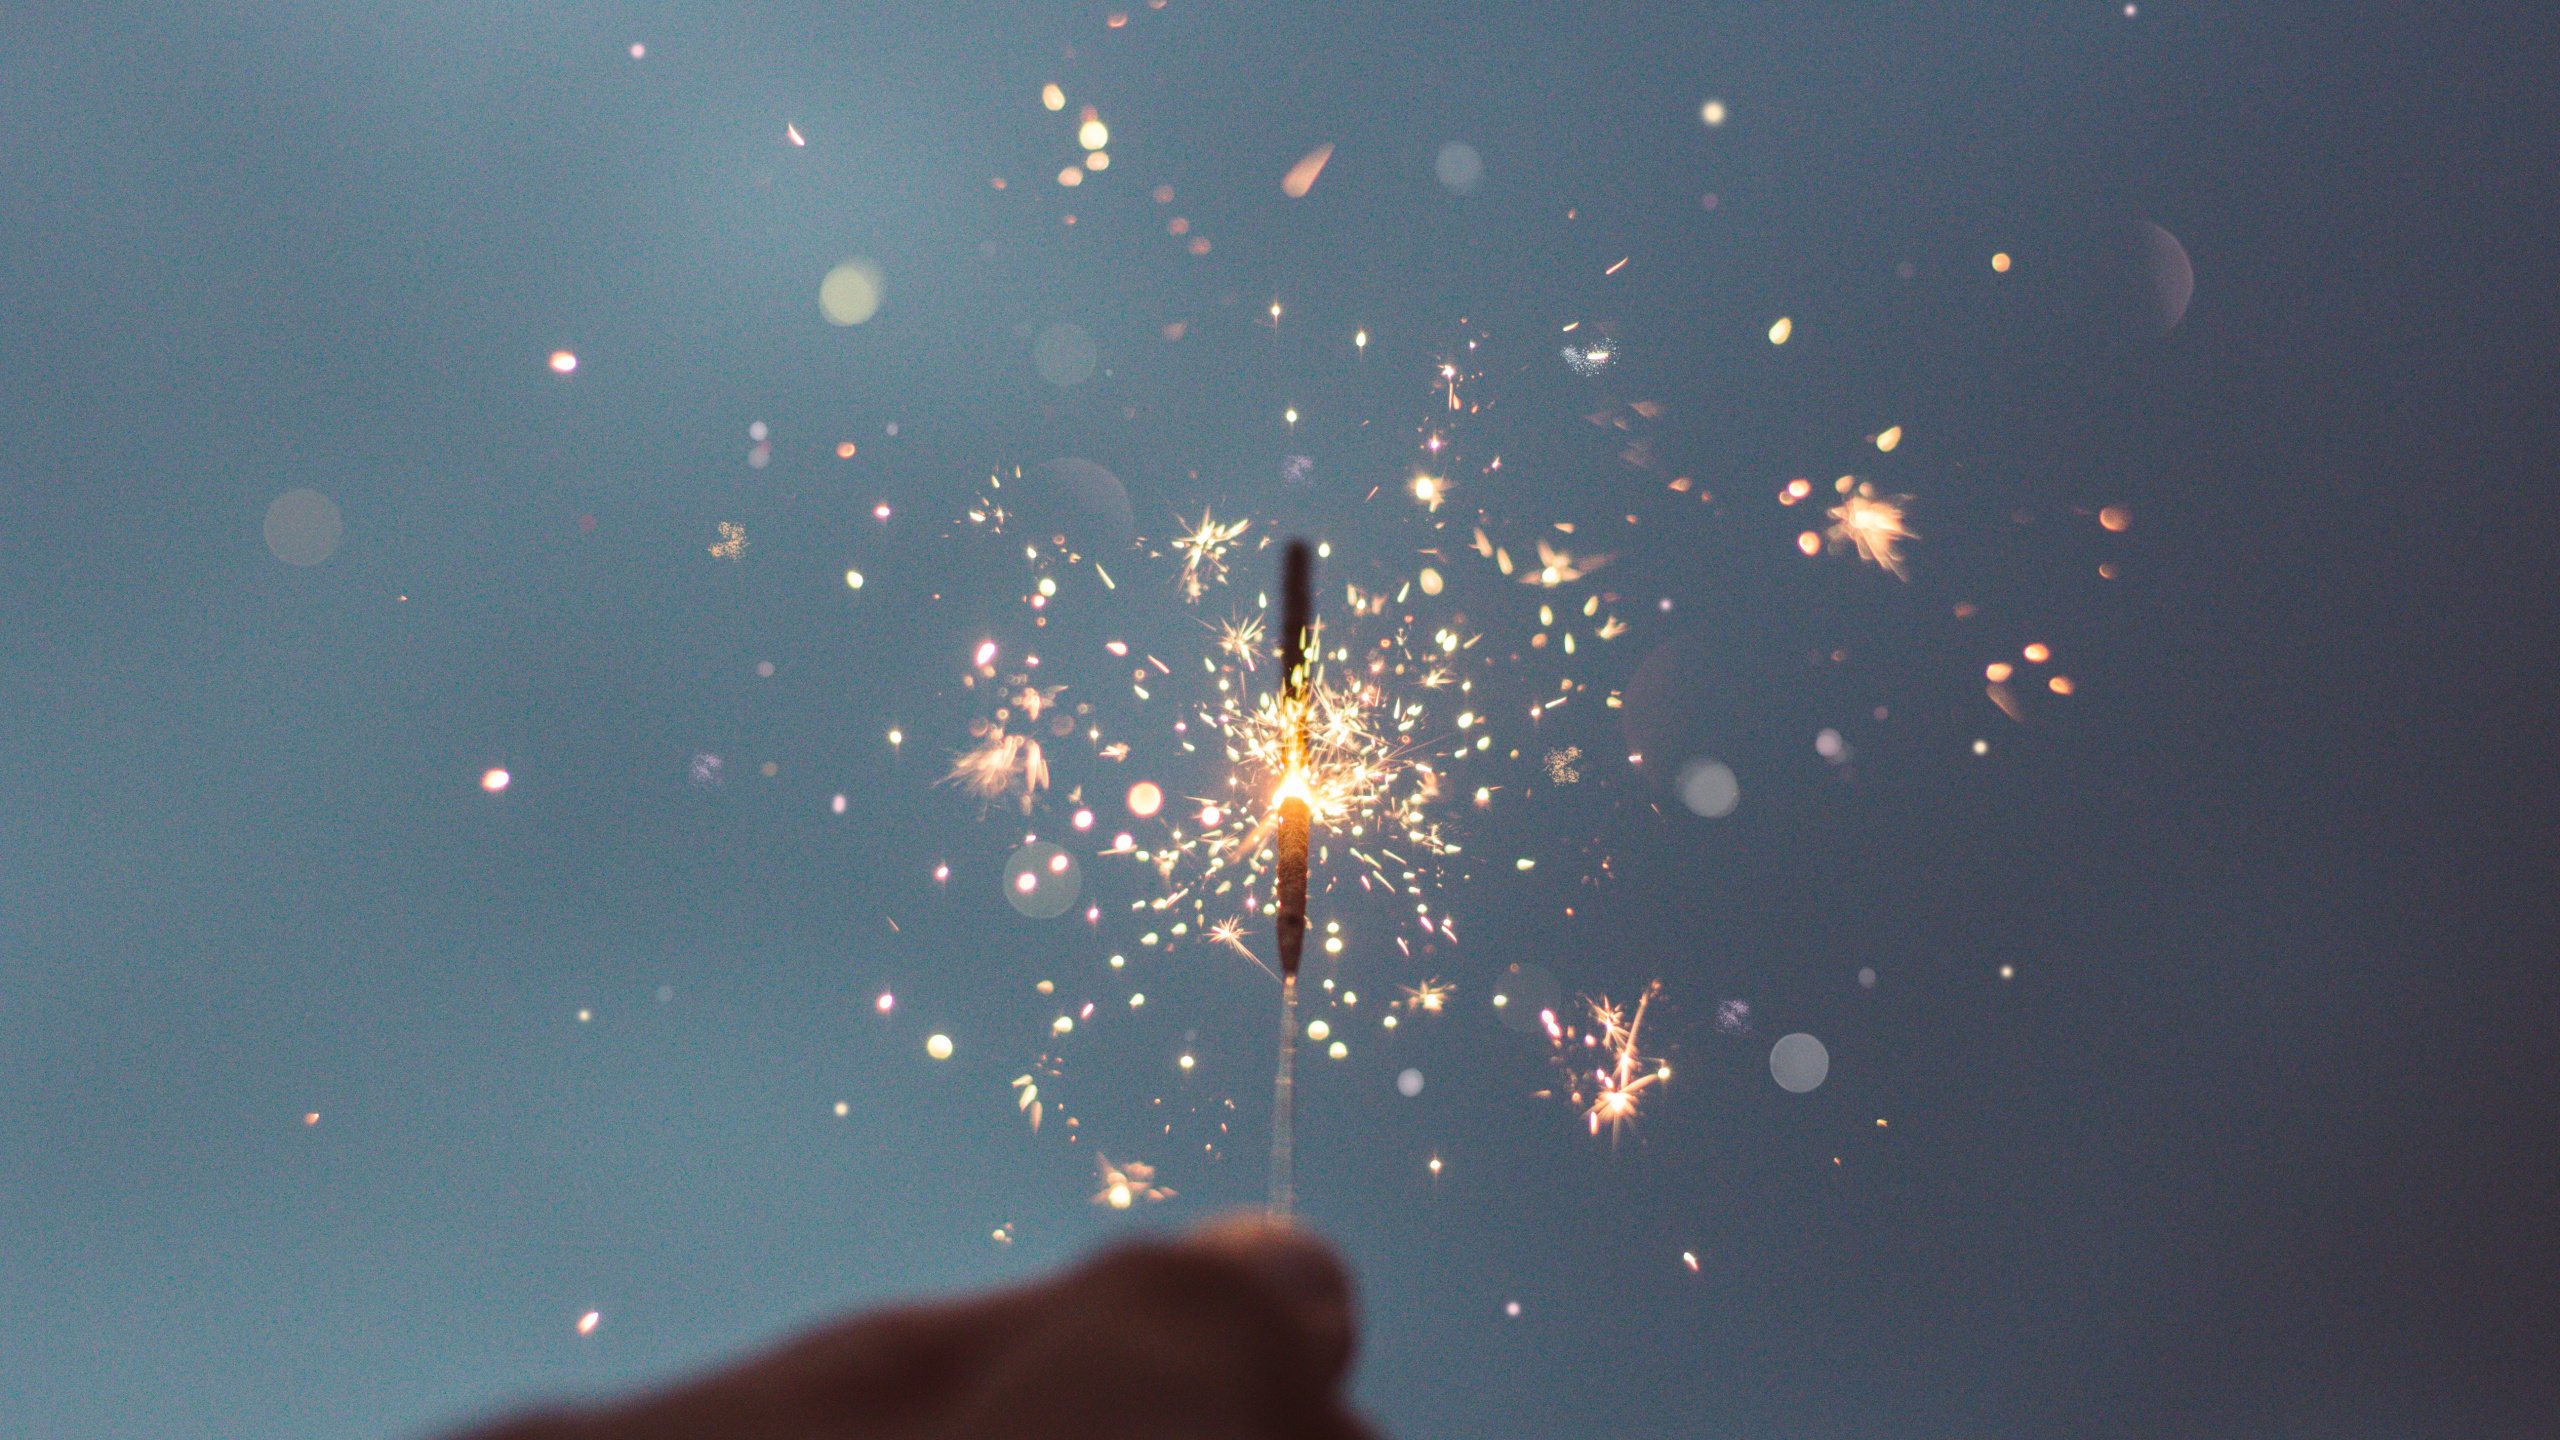 Neujahr, Wasser, Wunderkerze, Feuerwerk, Hand. Wallpaper in 2560x1440 Resolution